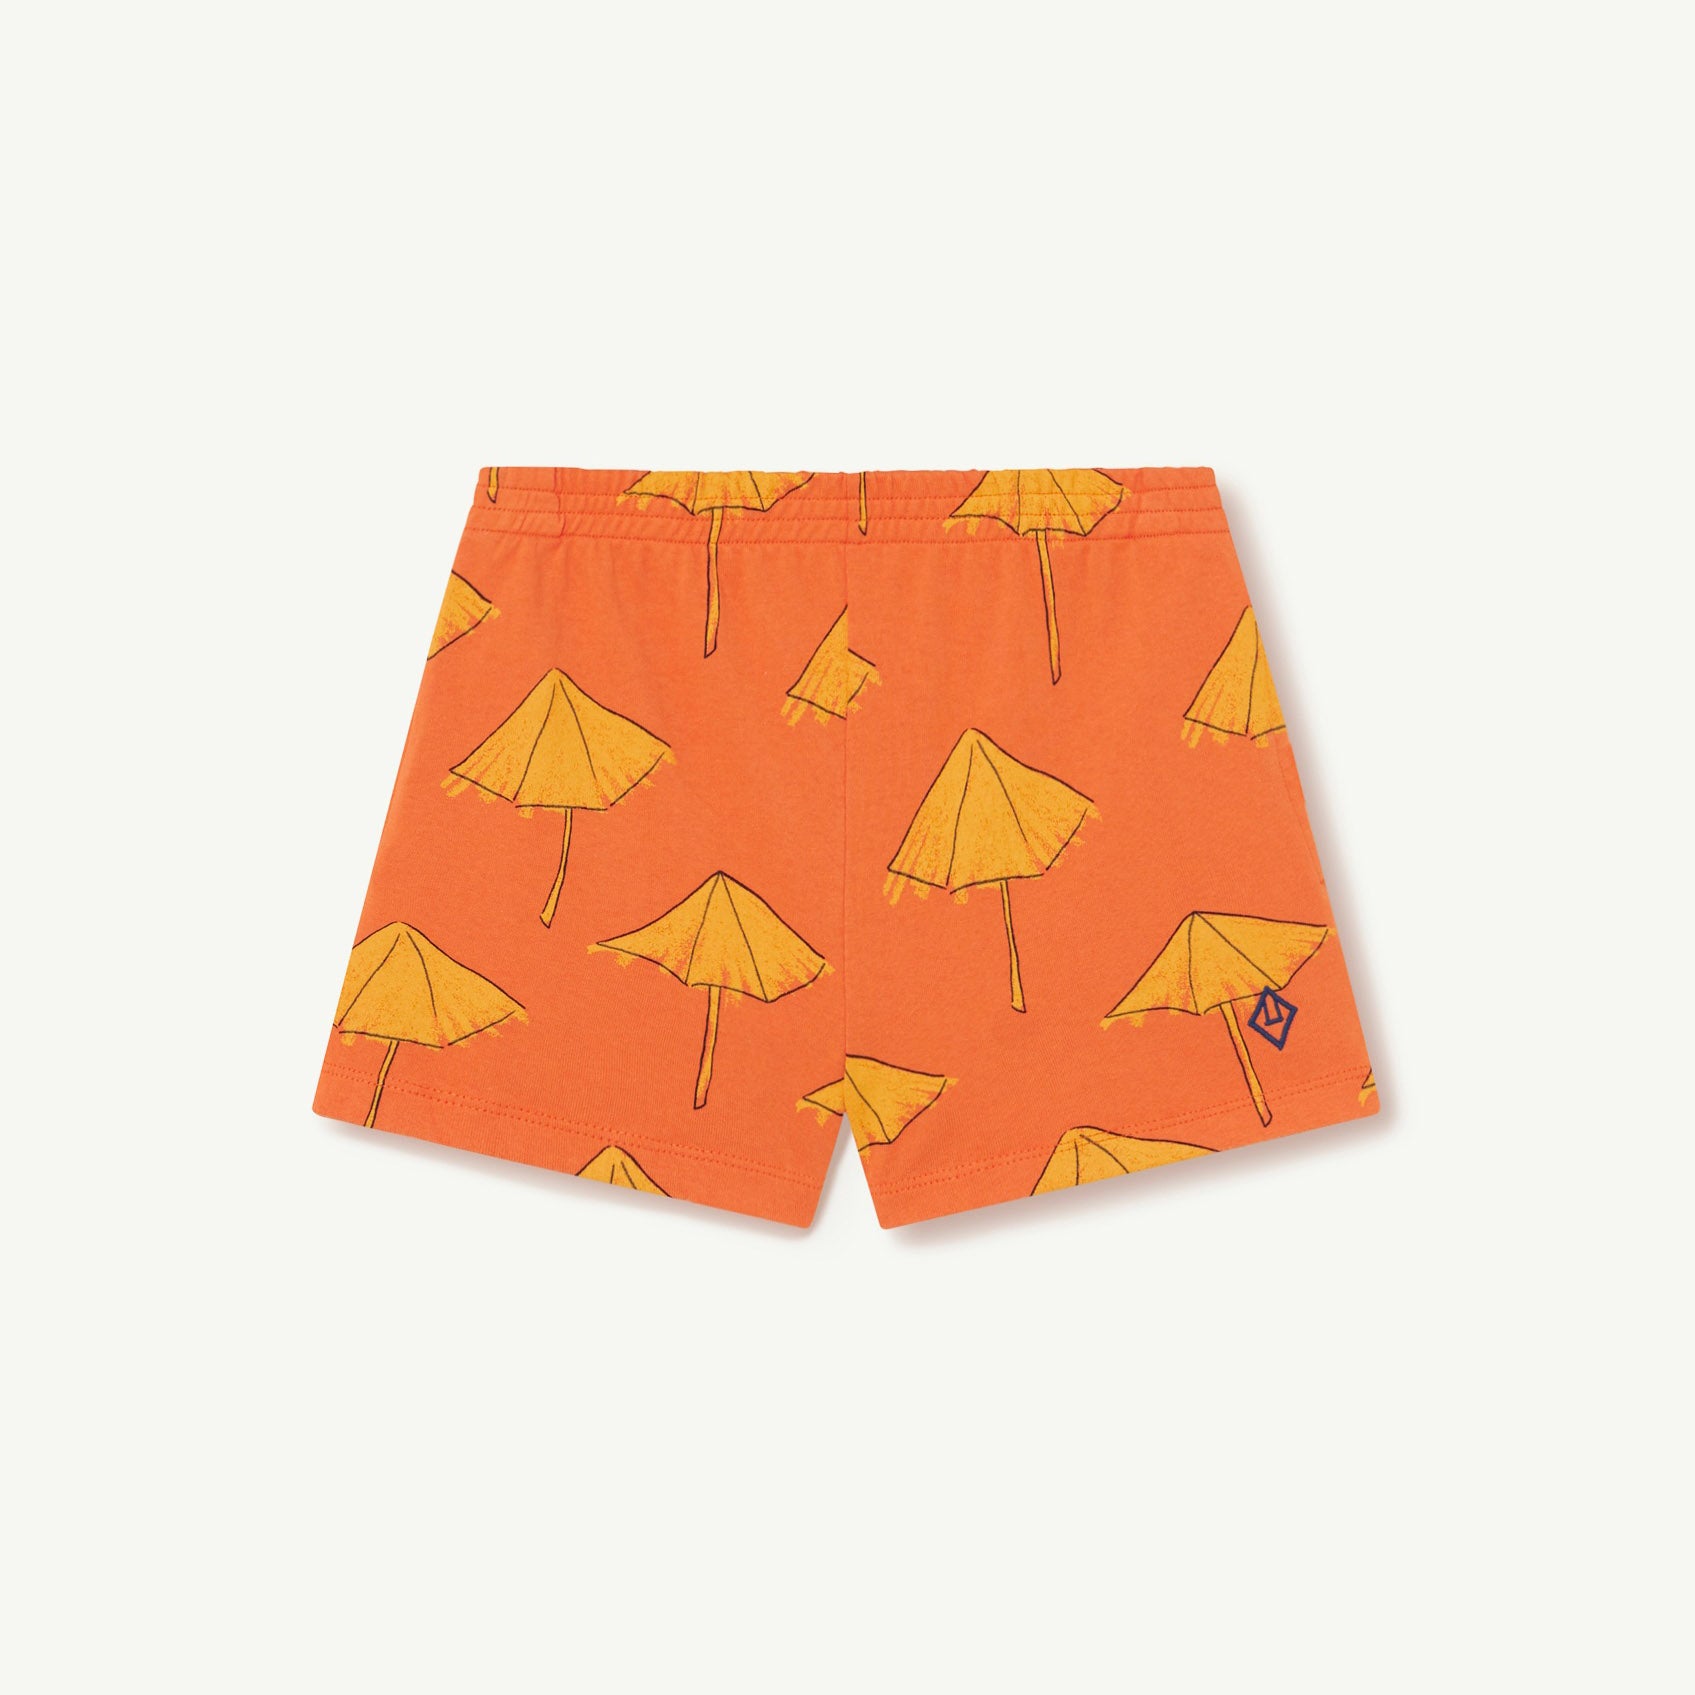 Boys & Girls Orange Printed Cotton Shorts